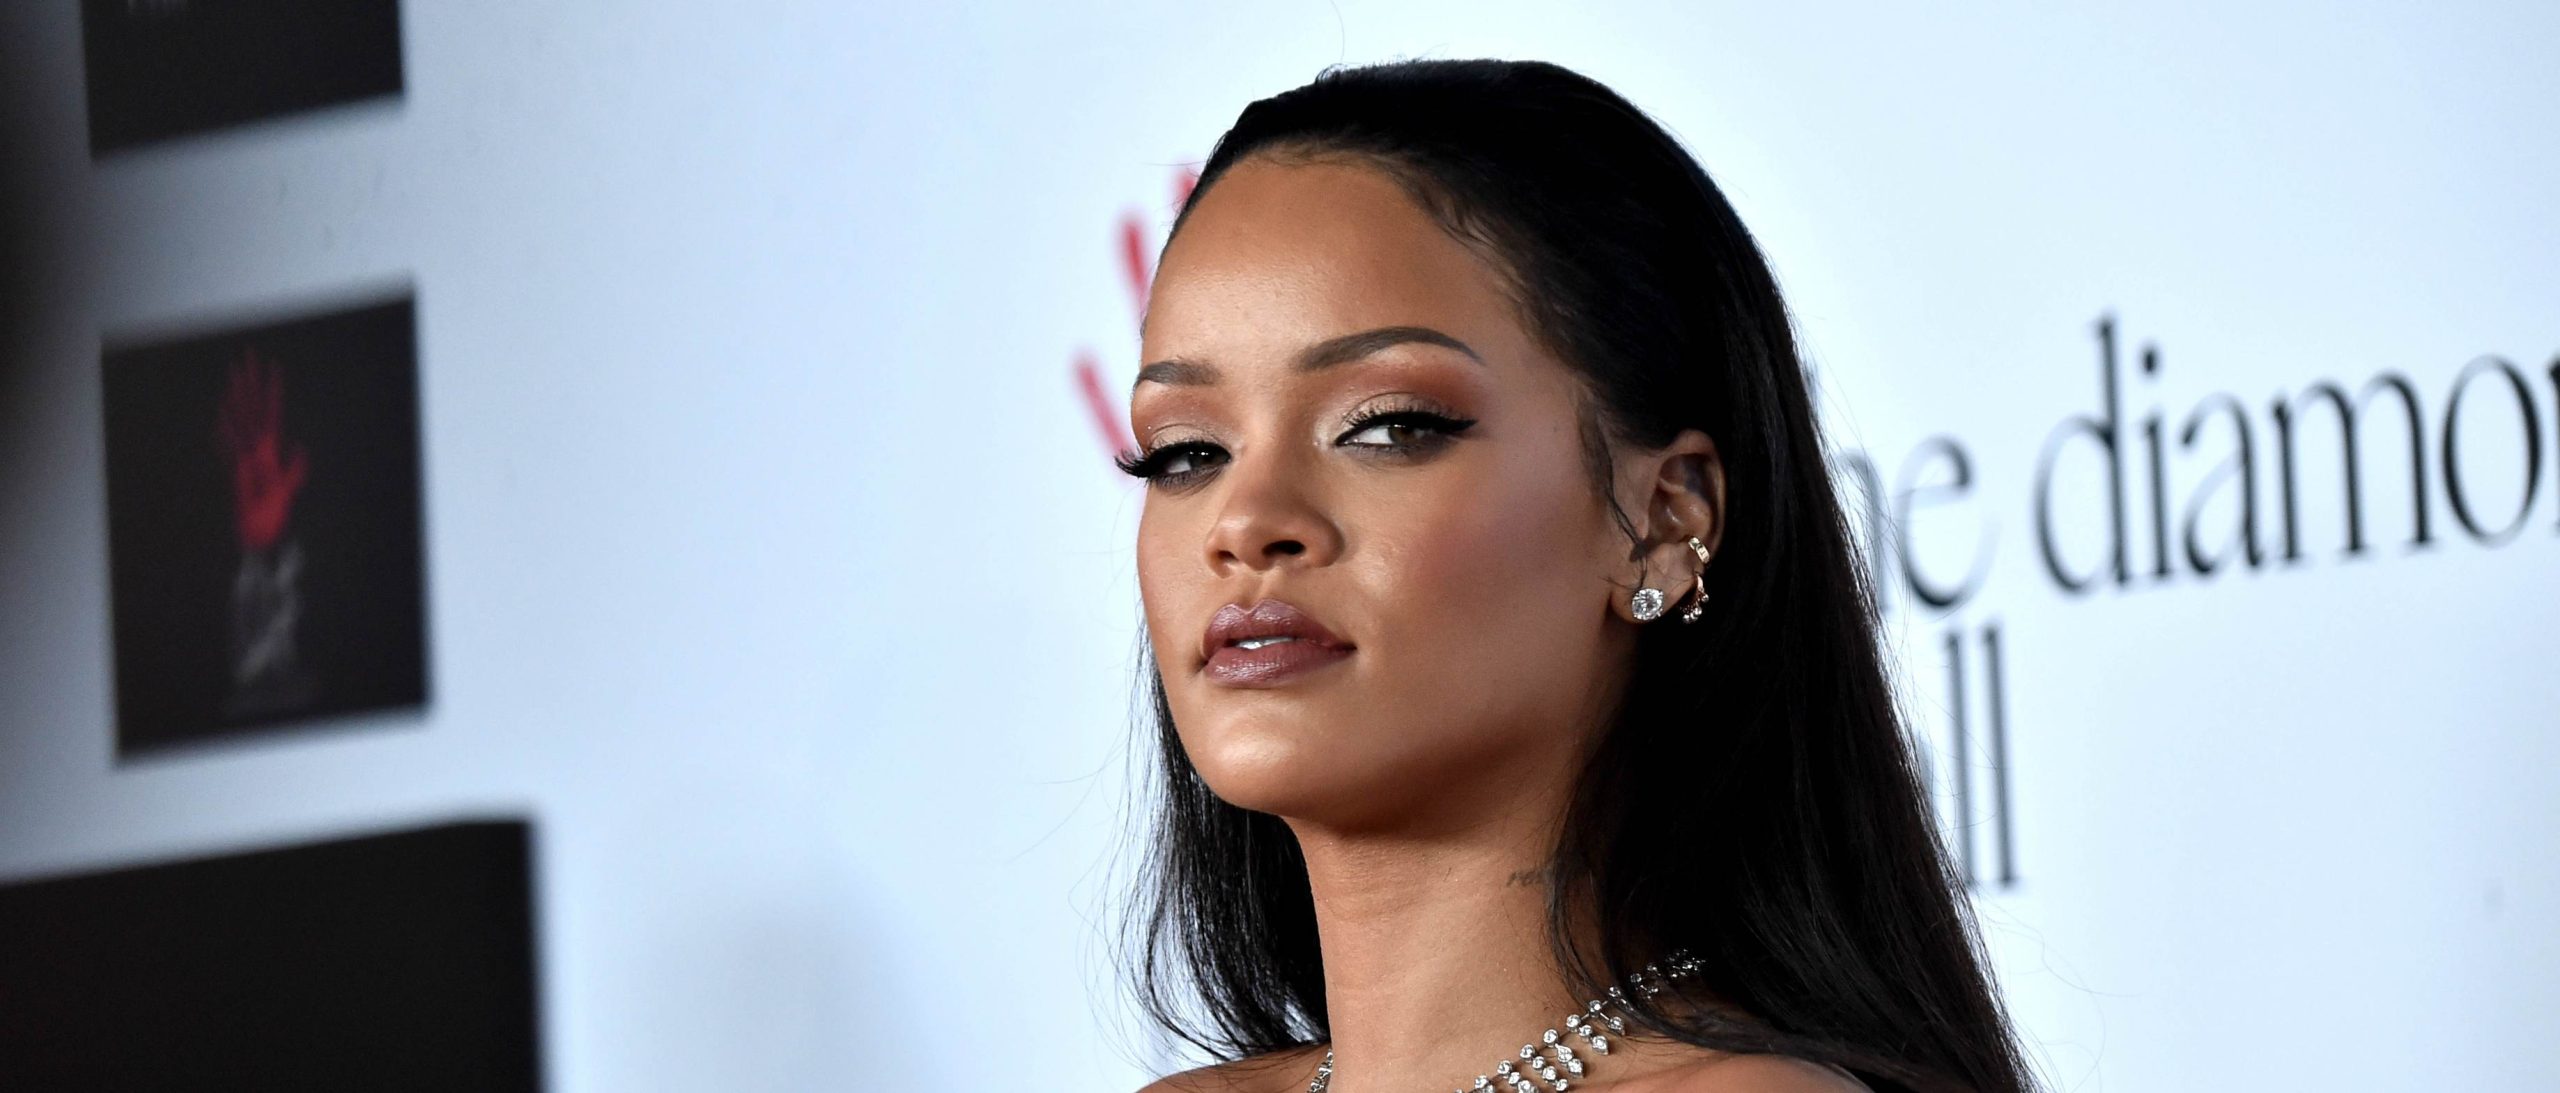 Η Rihanna αποστομώνει δημοσιογράφο που έκανε αρνητικά σχόλια για τα κιλά της (φωτό)